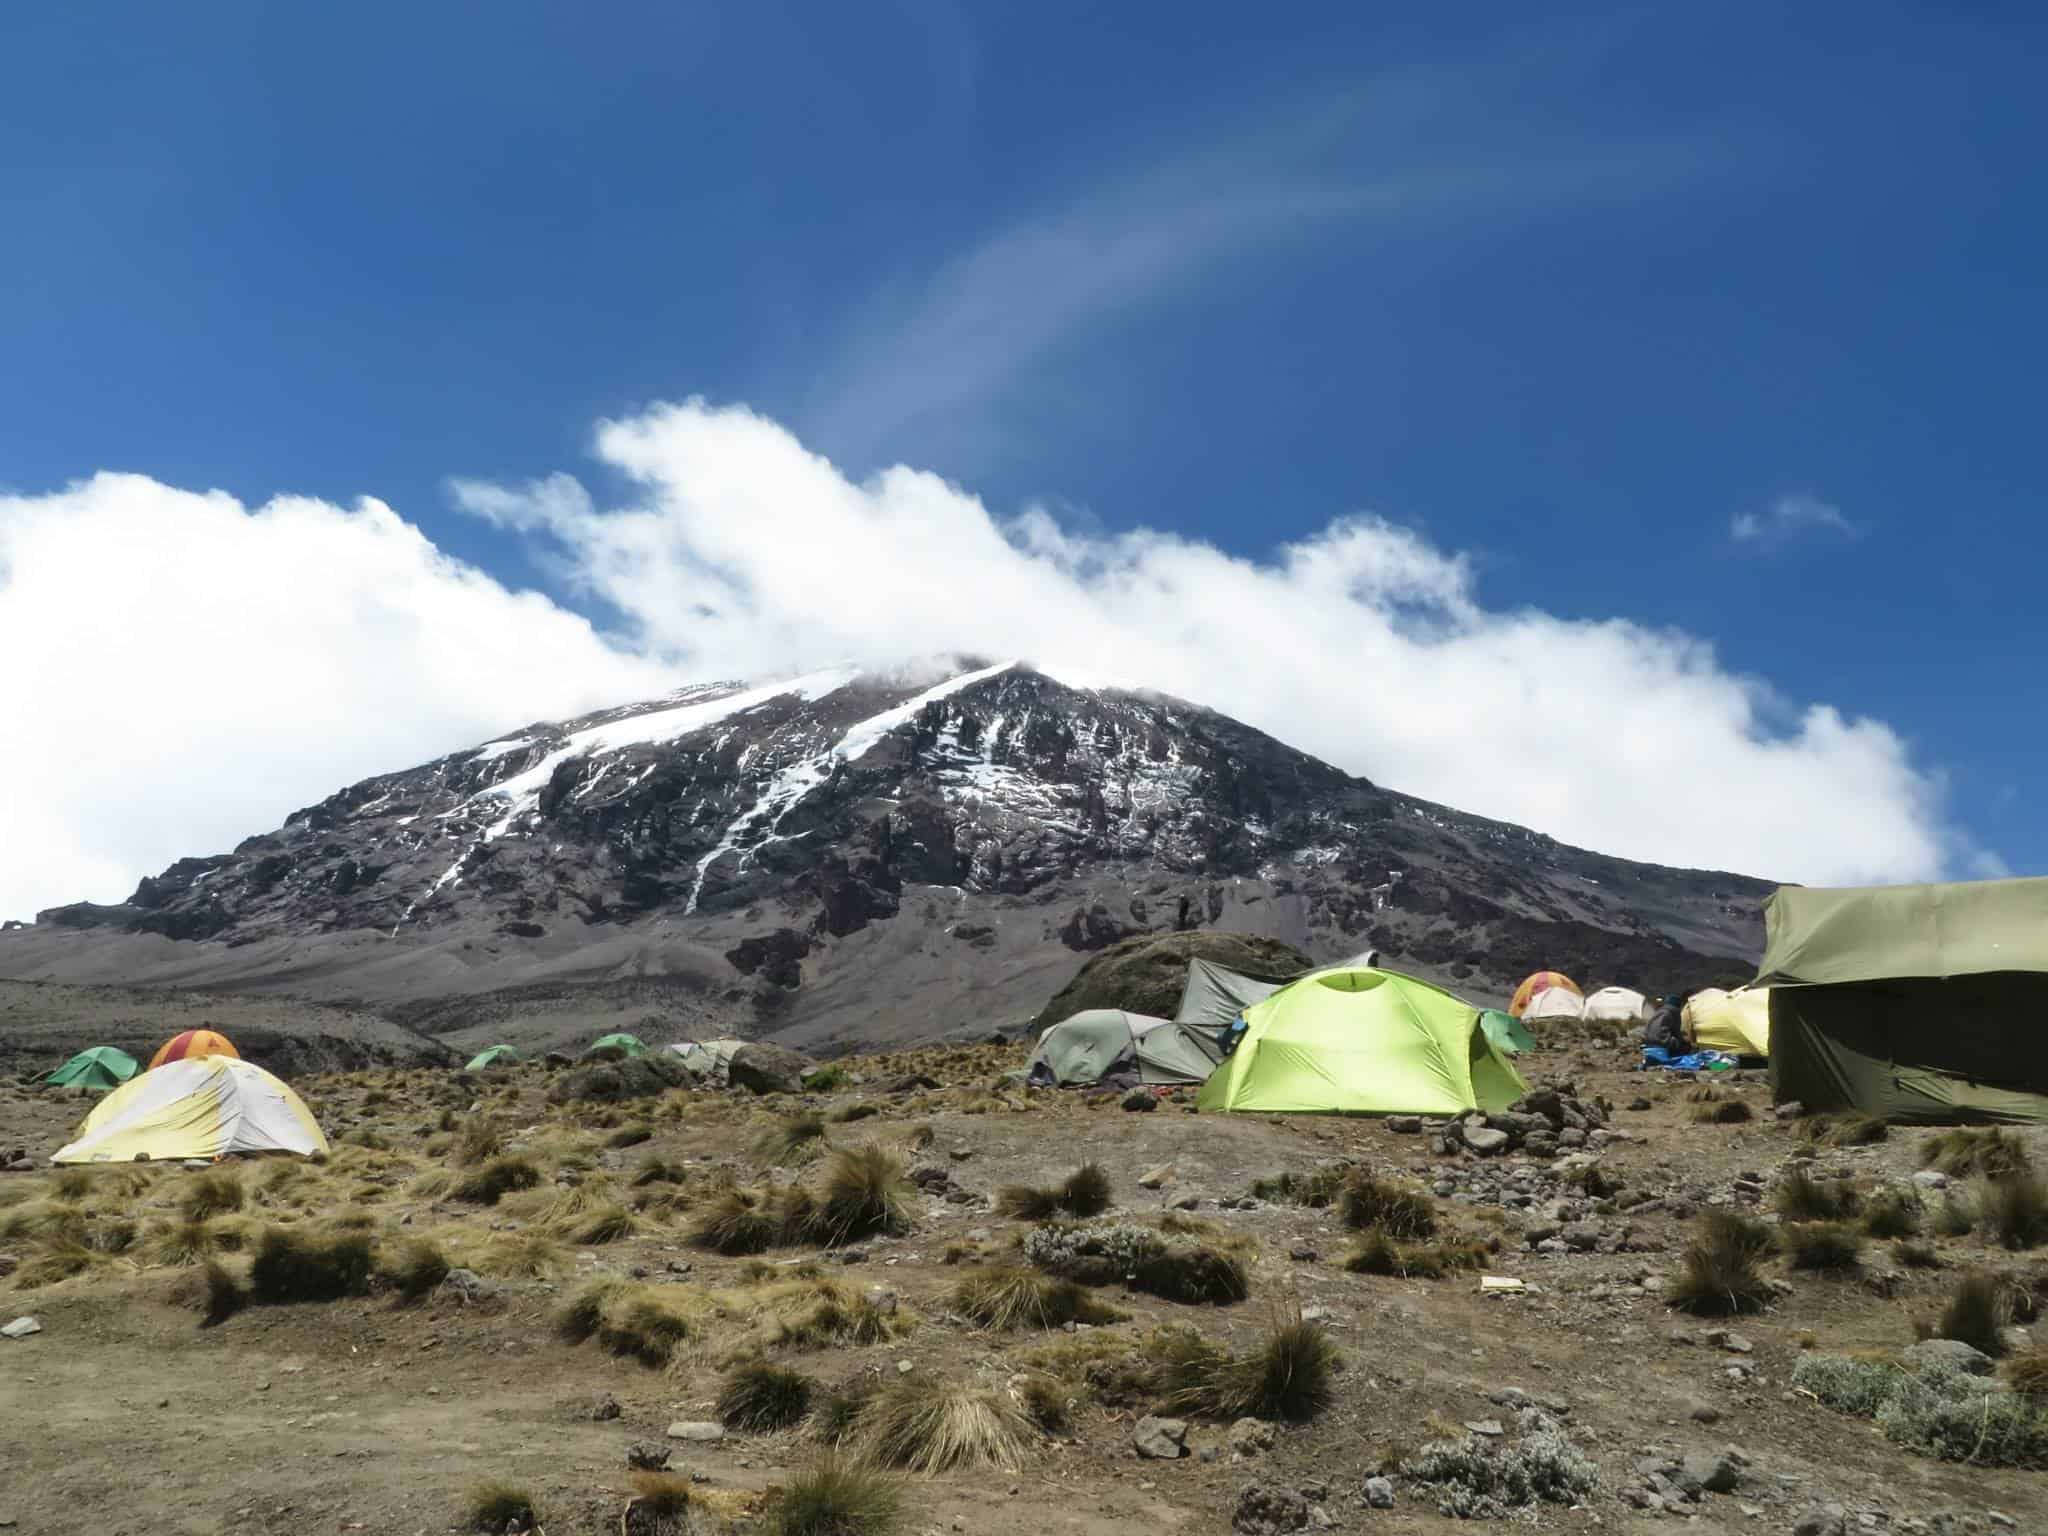 Camping 11 11. Шира Килиманджаро. Палатка Килиманджаро. Плато Шира Килиманджаро. Ледник Килиманджаро Танзания.